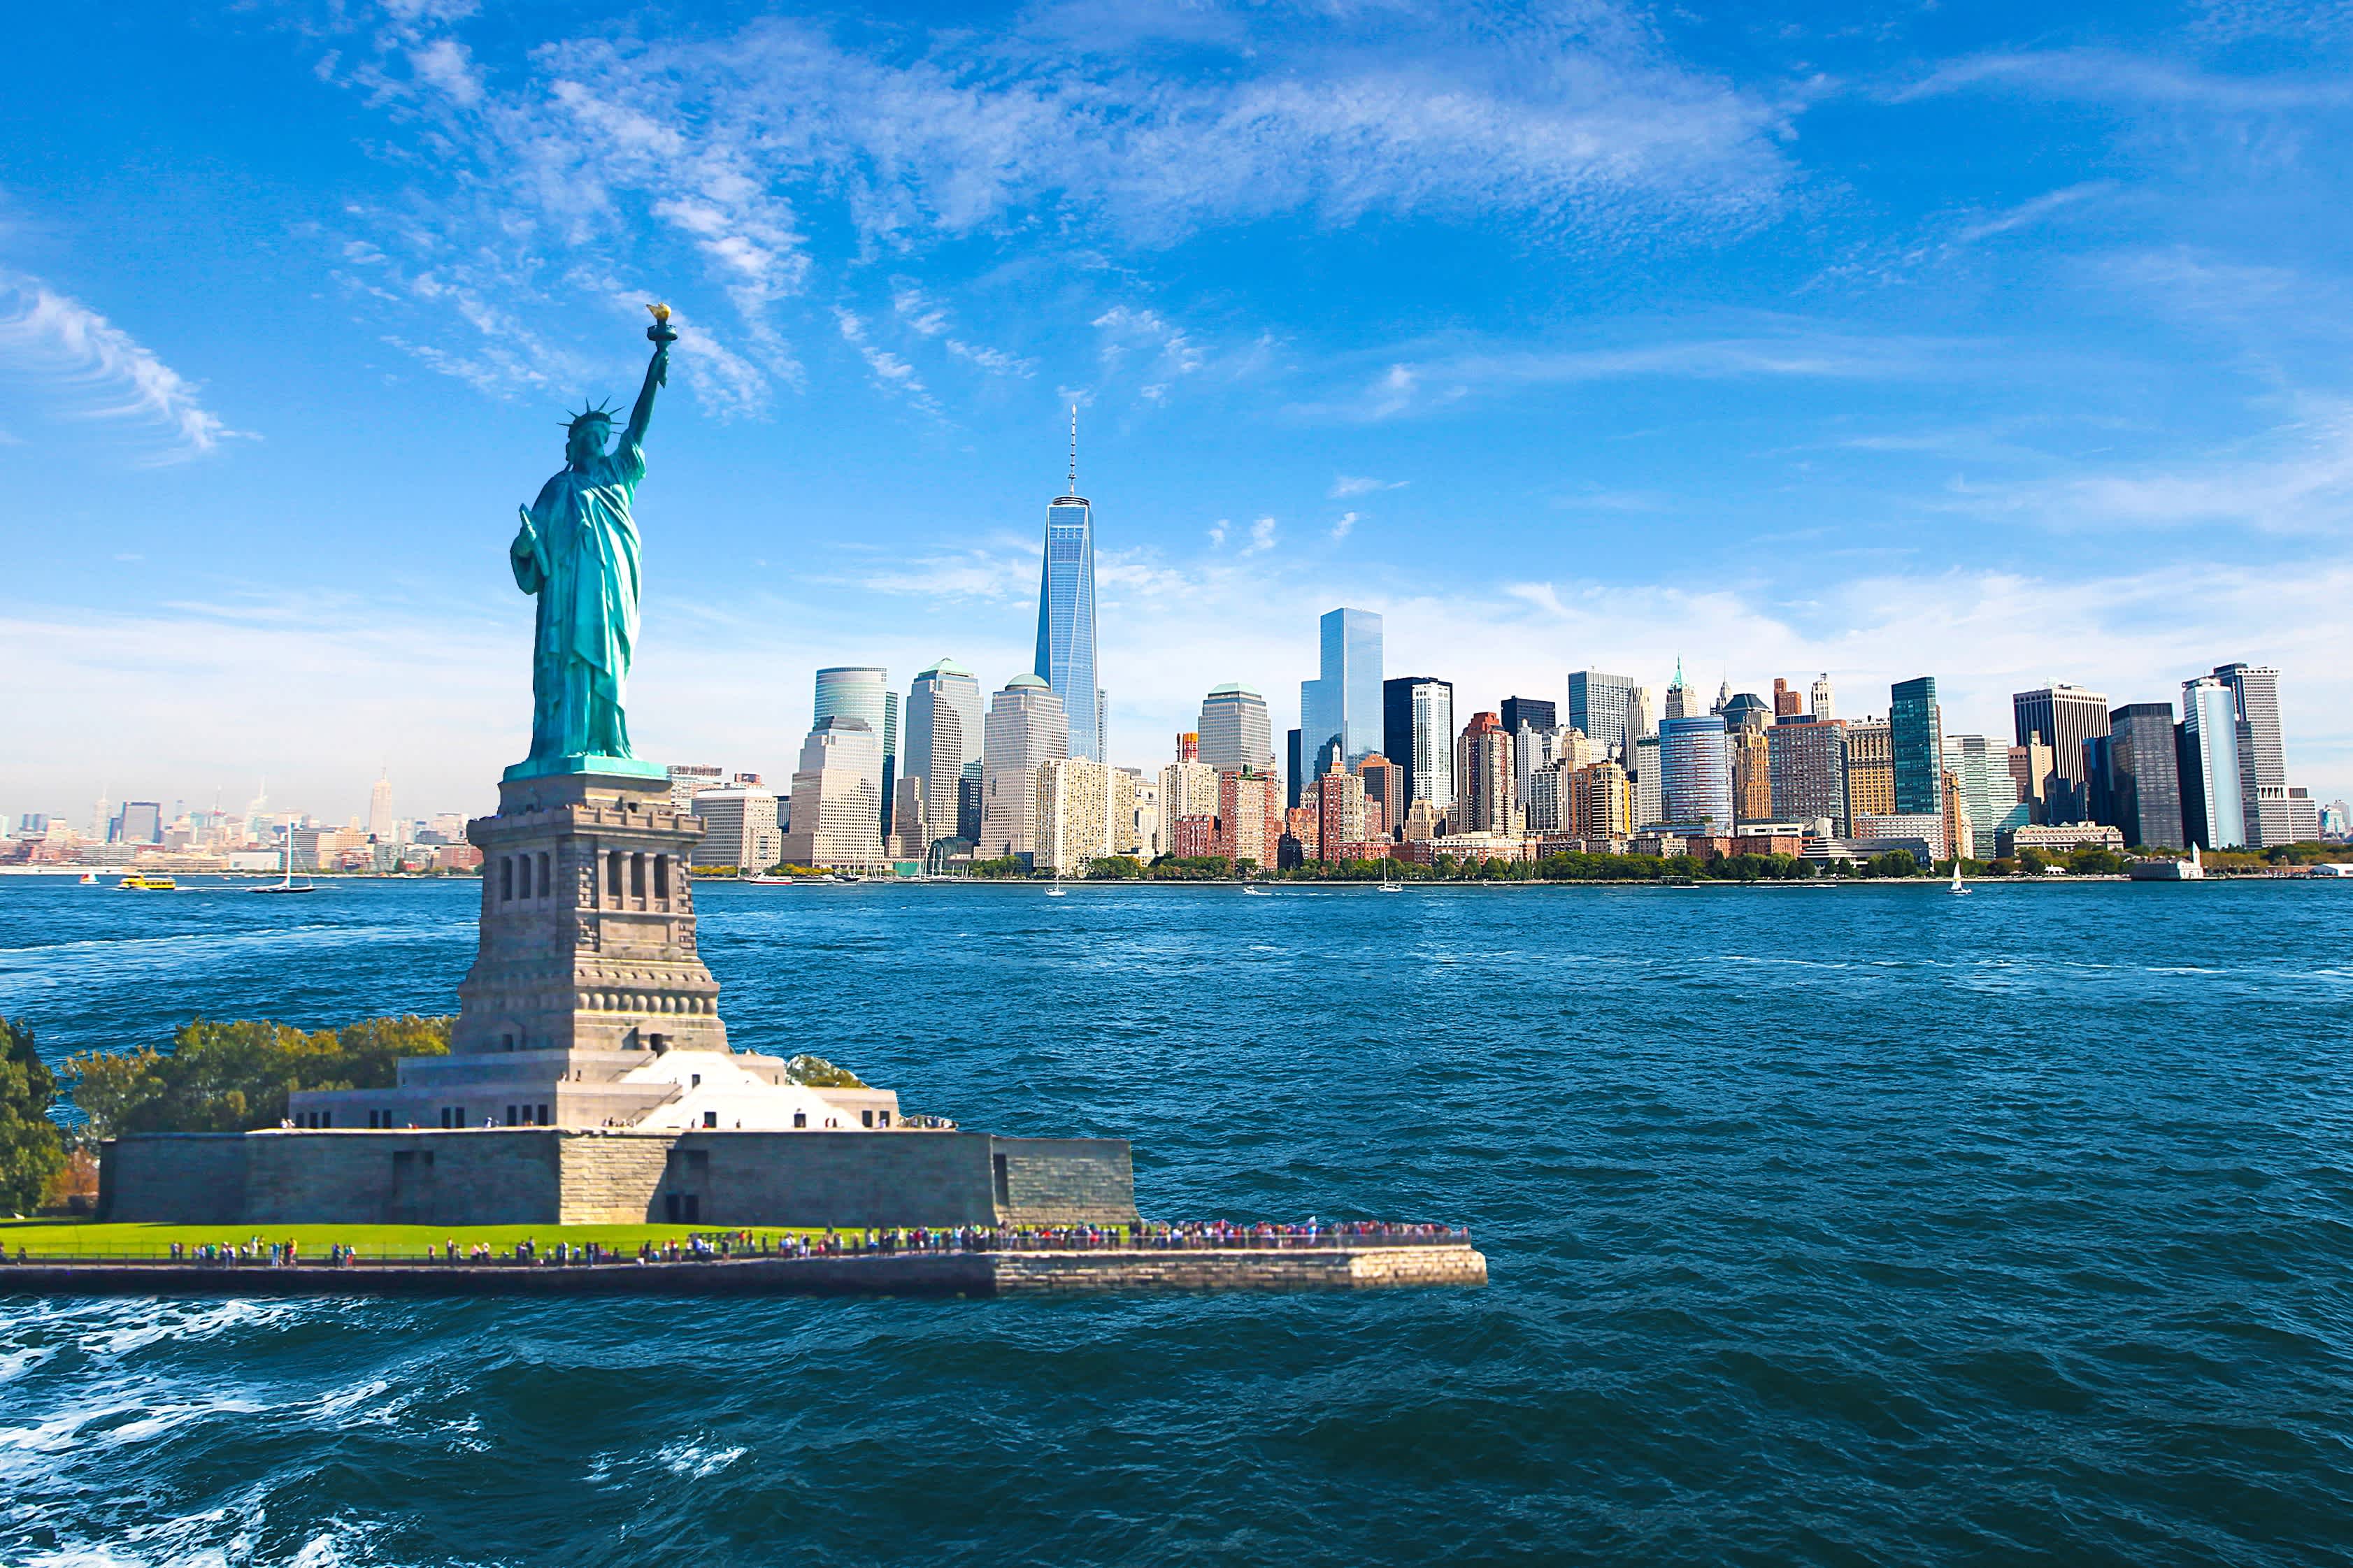 Лучшее видео америки. Статуя свободы Нью-Йорк. Нью-Йорк бстатуясвободы. Нью Йорк стадия свободы. НЬЮЙ РРК статуя свободы.